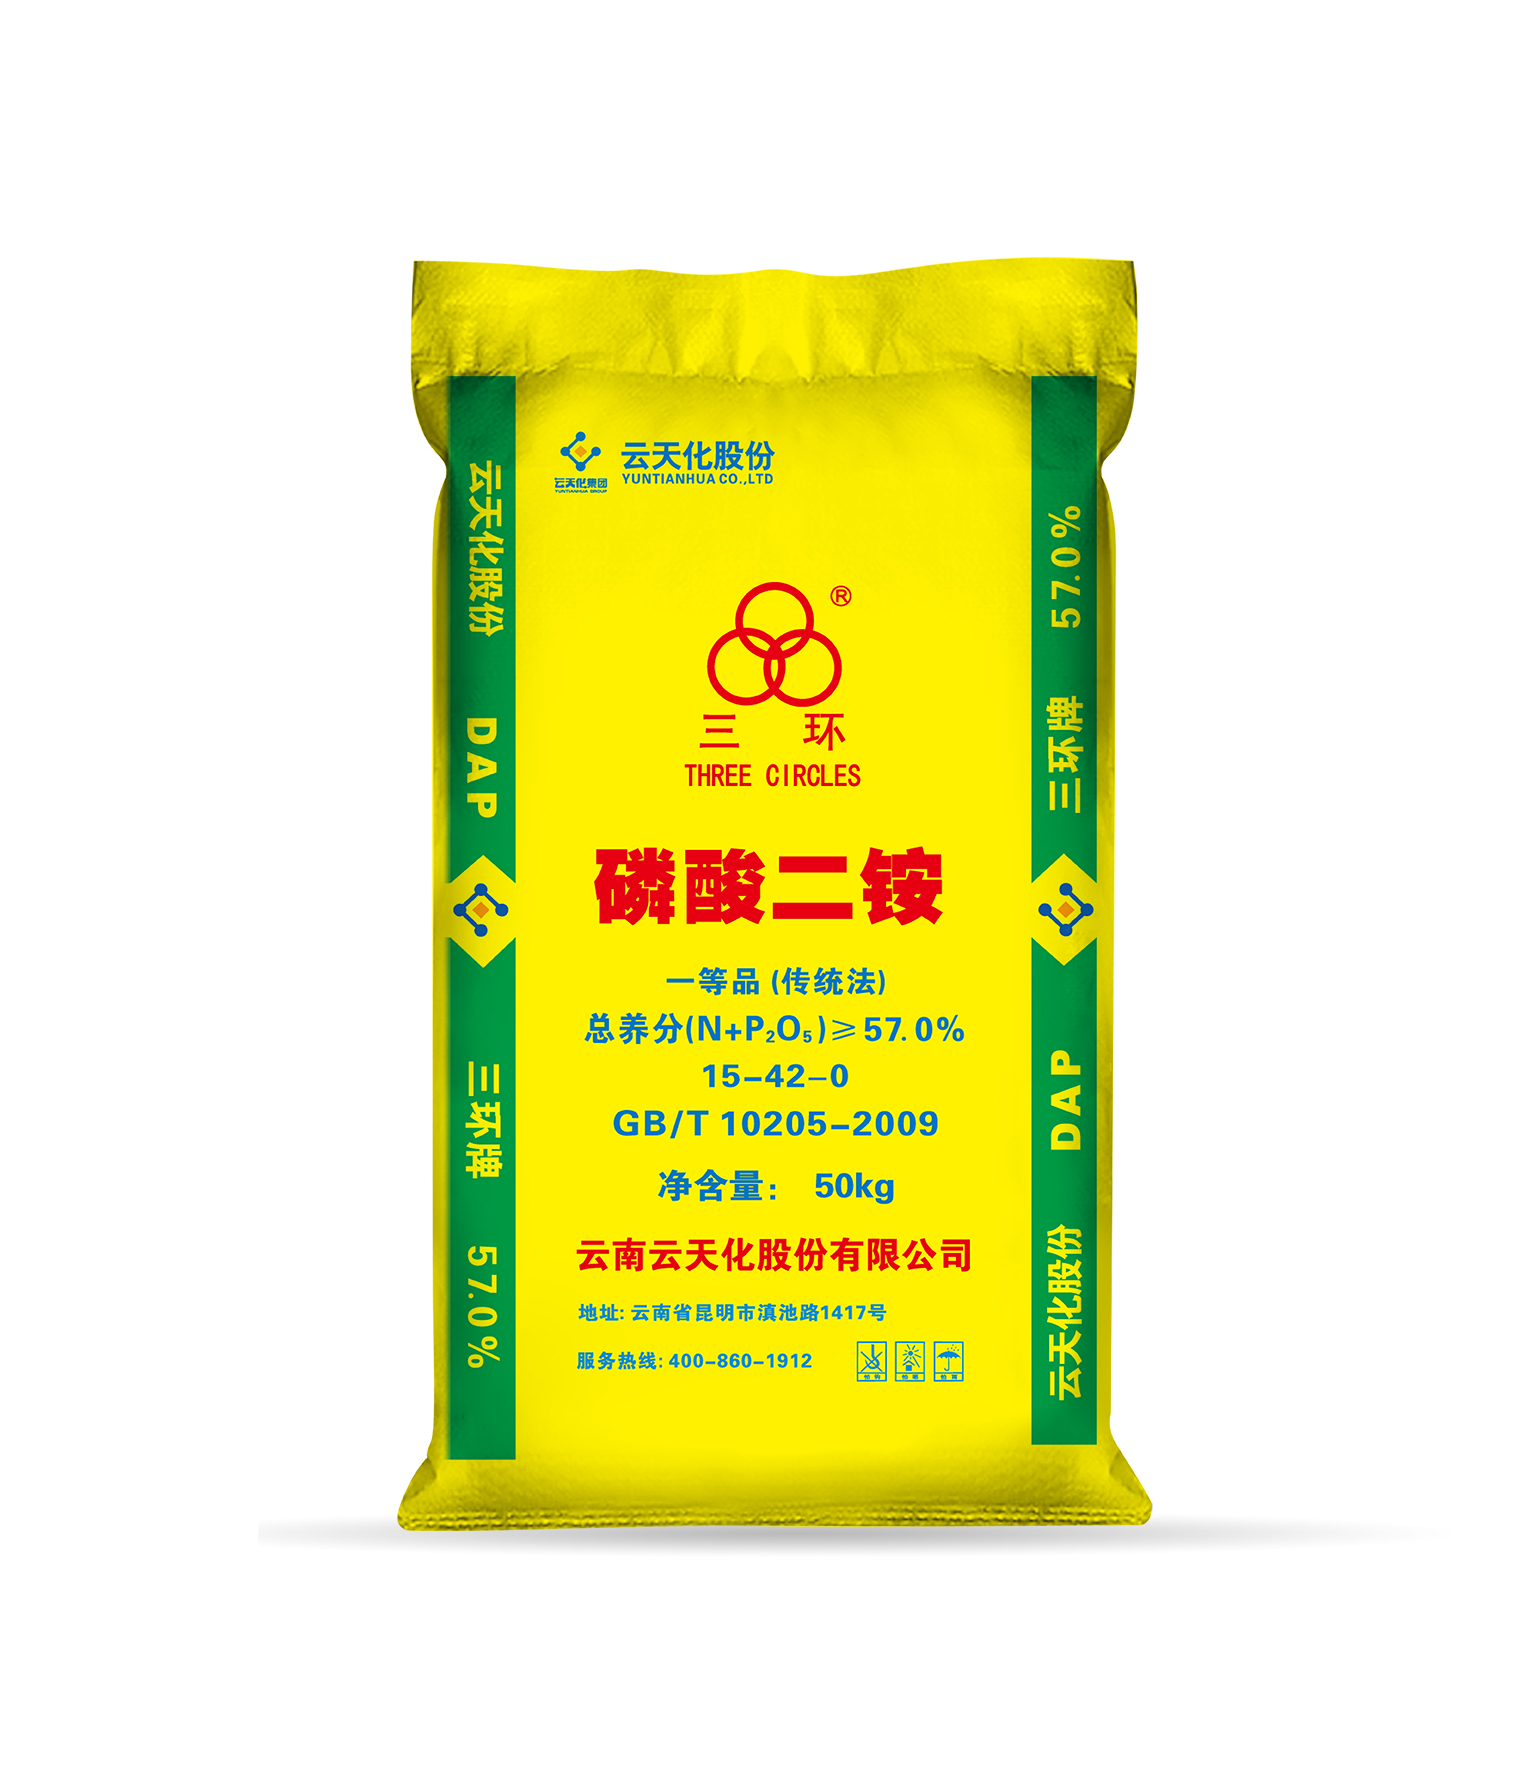 磷酸二铵/三环(15-42)57%/云峰工厂50kg通用(粒状)